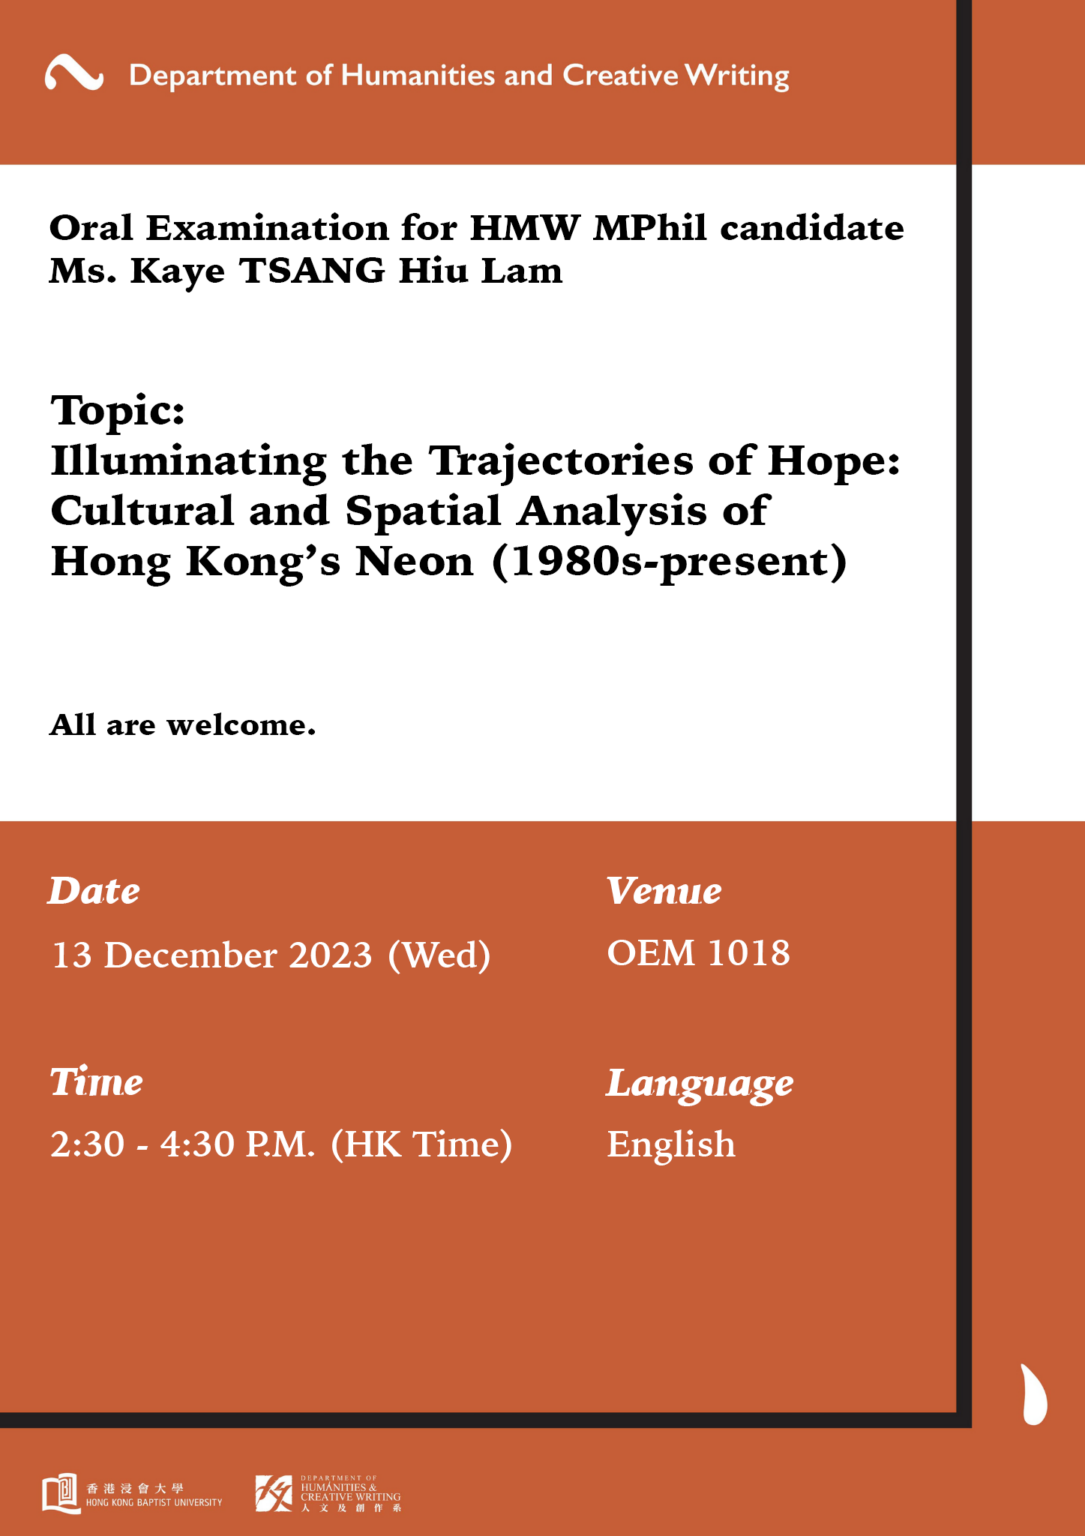 Oral Examination for HMW MPhil candidate Ms. Kaye Tsang Hiu Lam